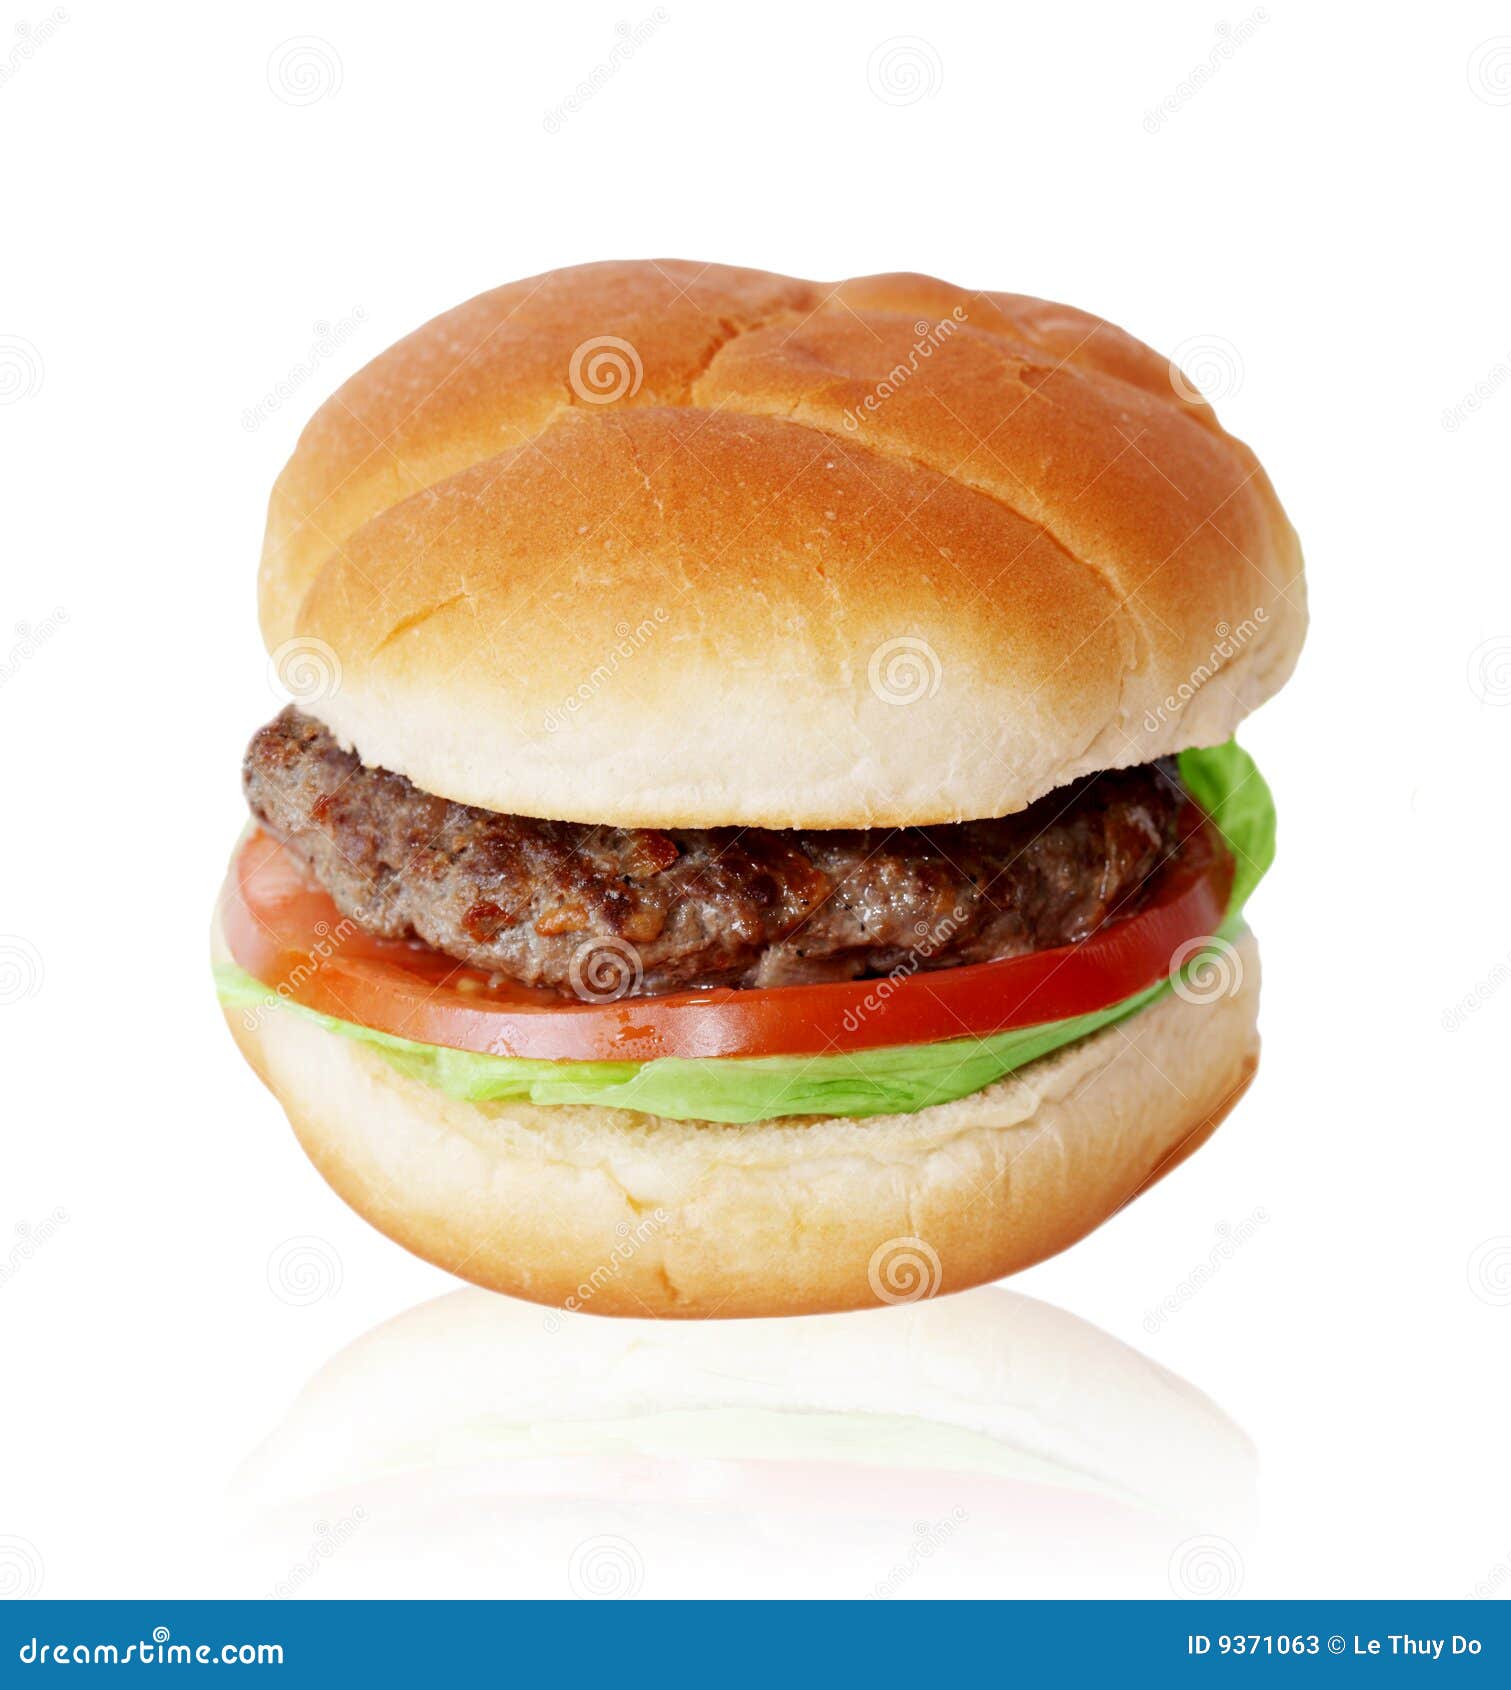 hamburger single patty